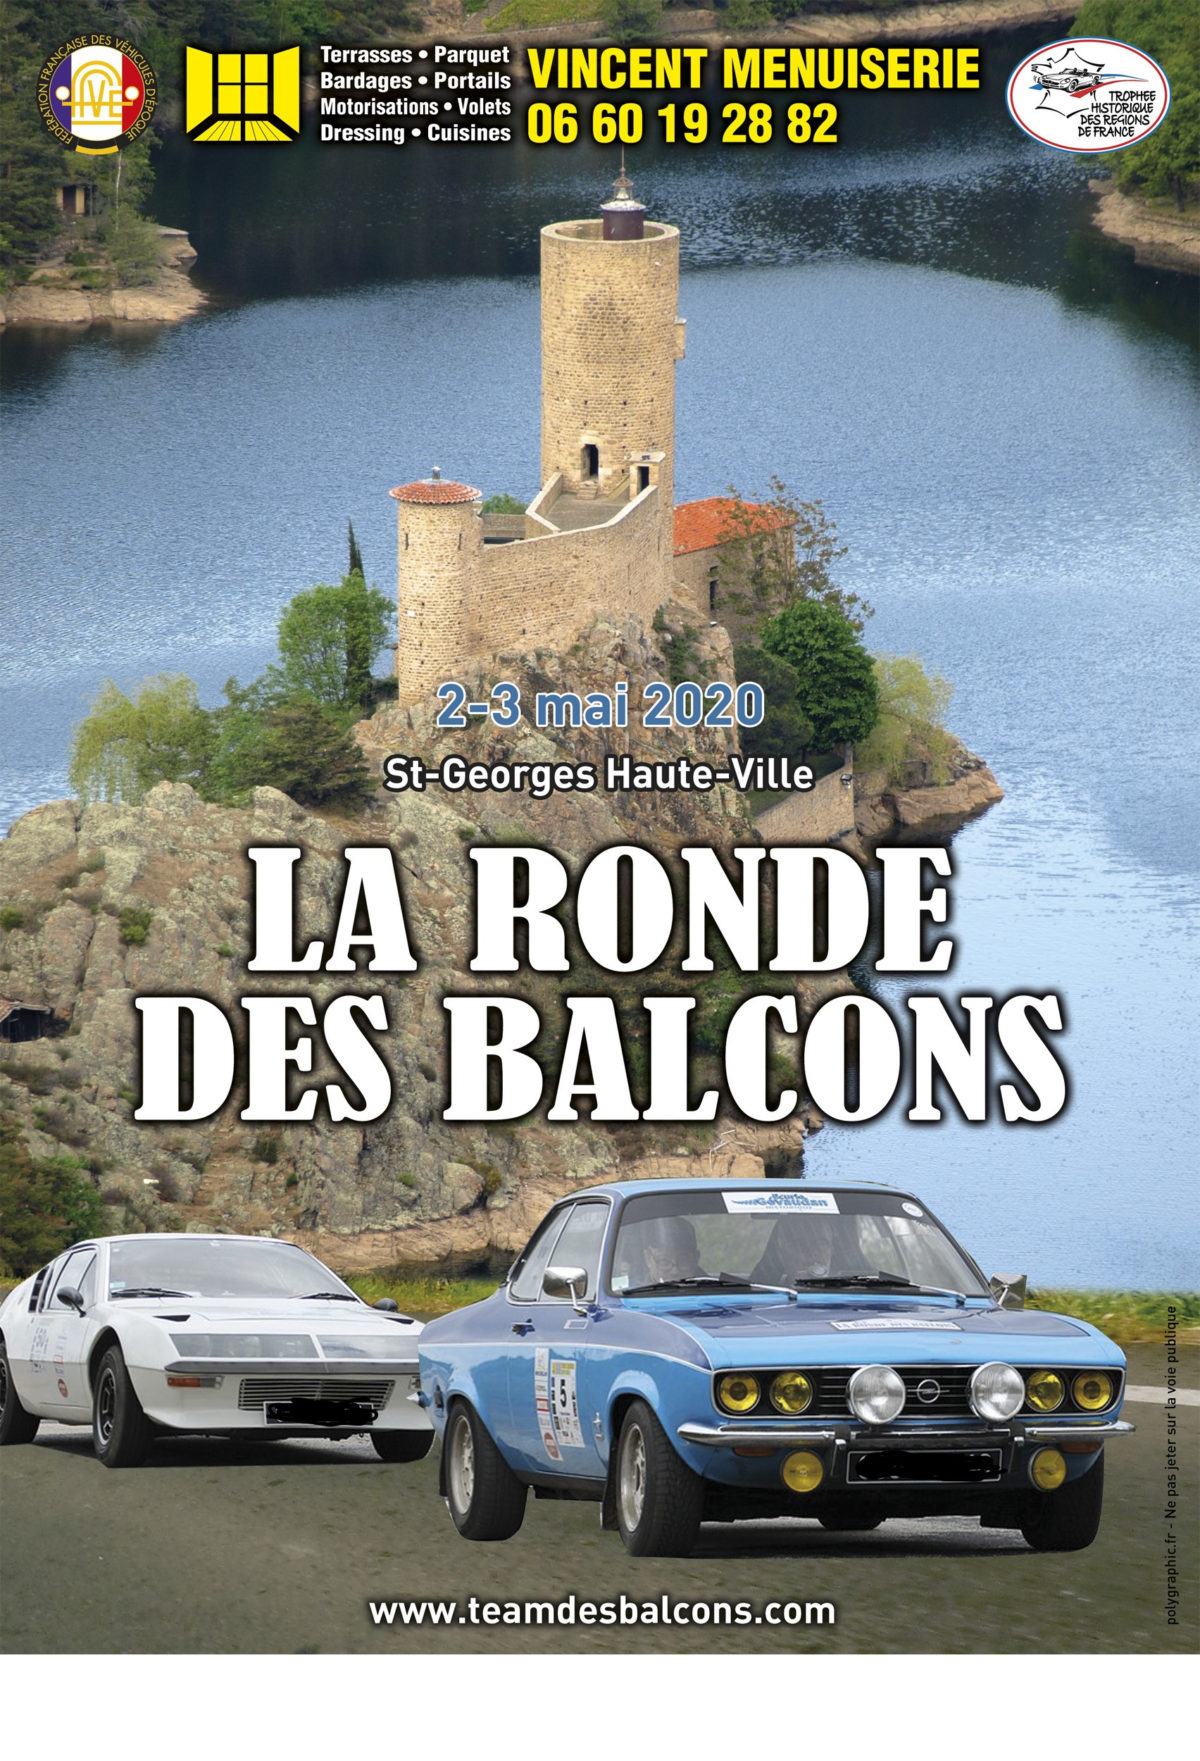 RONDE DES BALCONS 2020 – 2 et 3 mai – Saint Georges Haute Ville, Loire